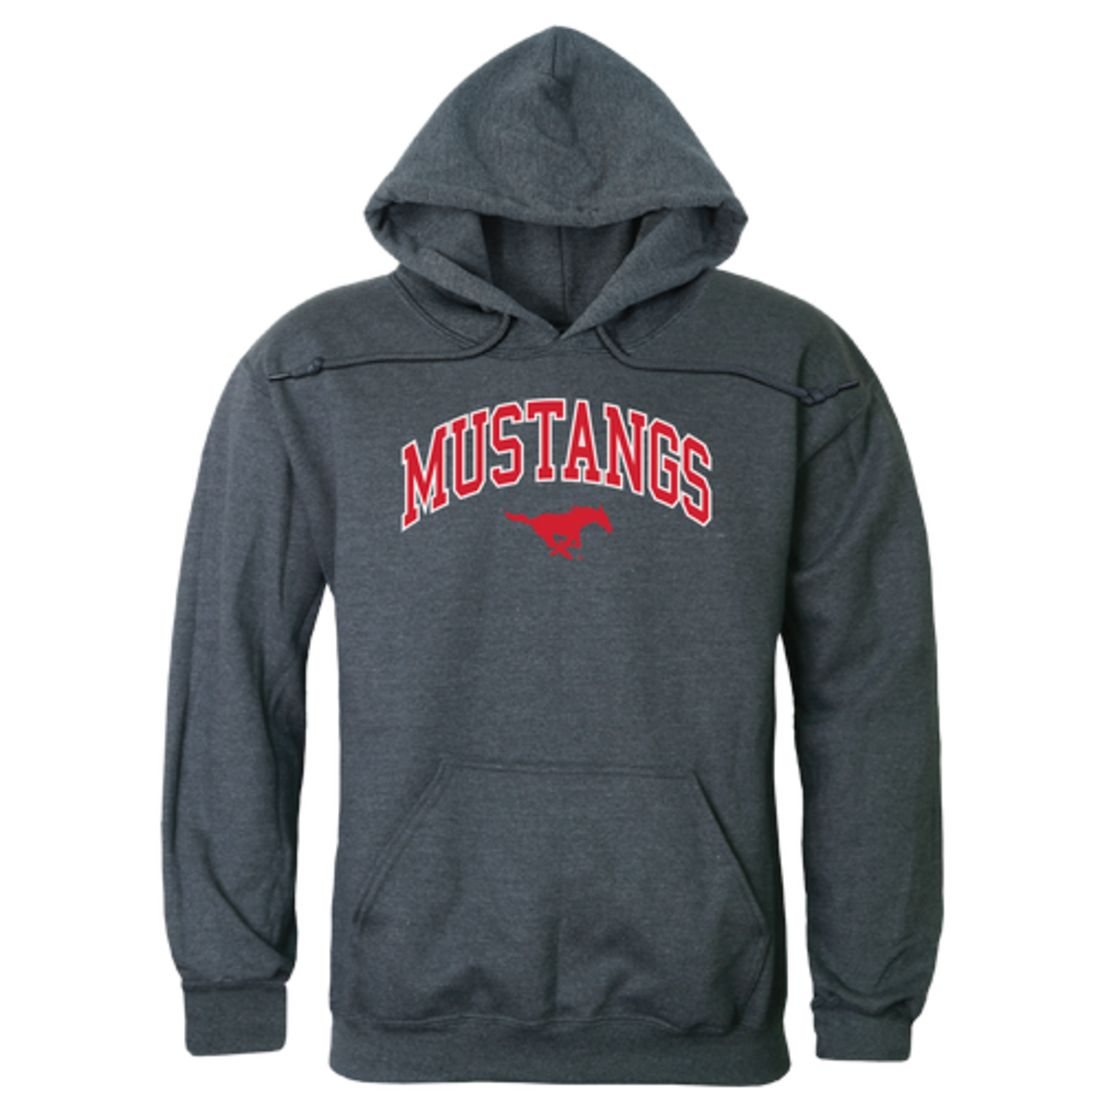 Southern Methodist University Mustangs Campus Fleece Hoodie Sweatshirts